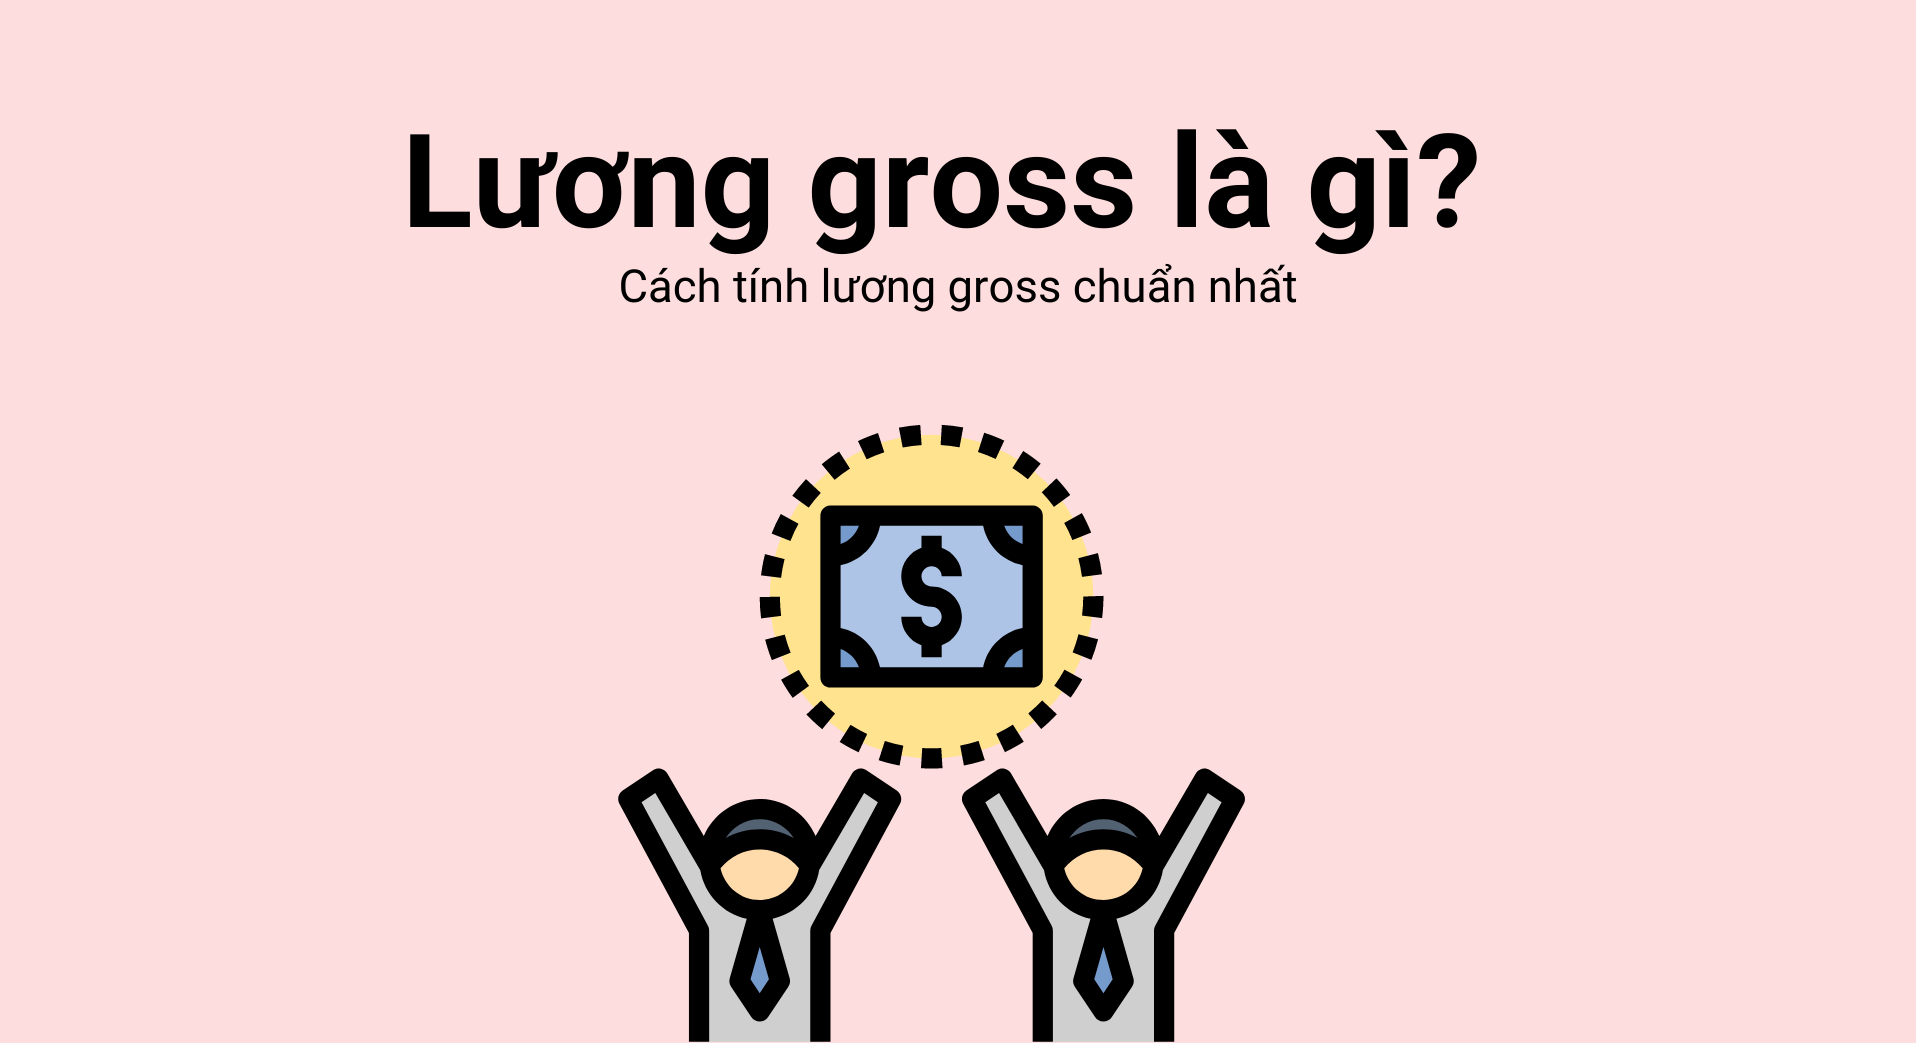 Lương gross là gì? Lương net và lương gross khác nhau như thế nào?